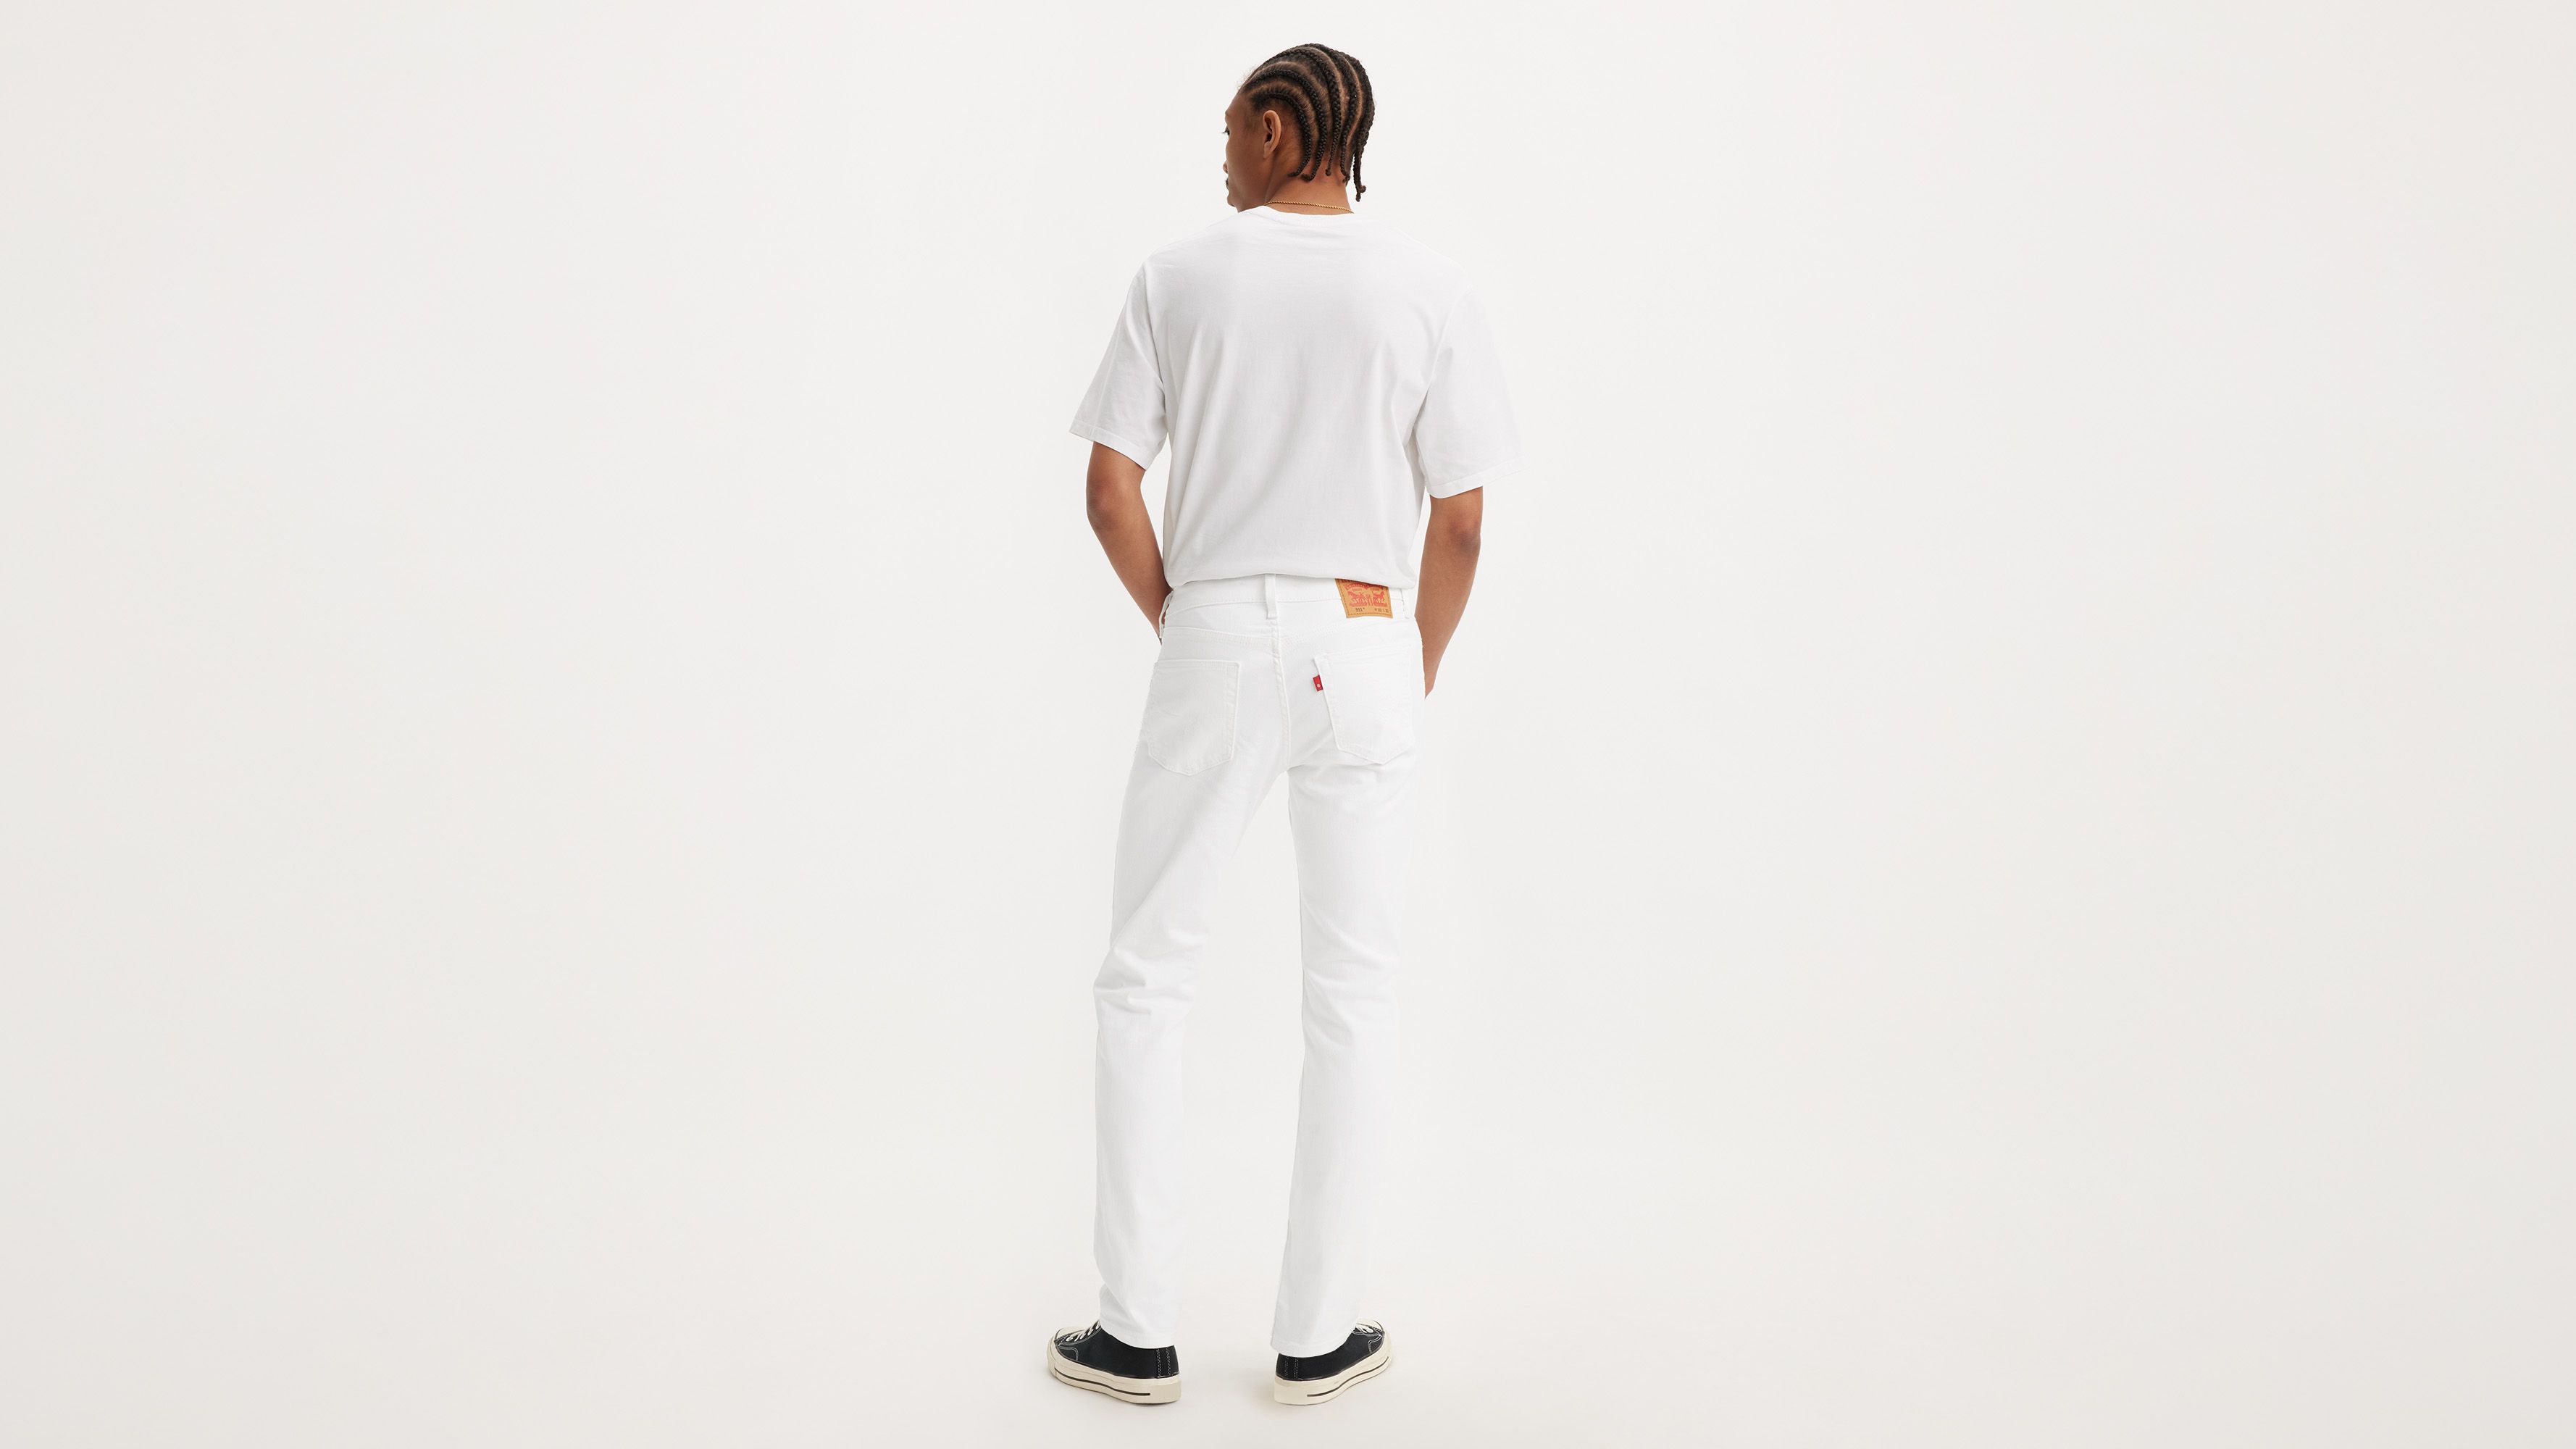 511™ Slim Fit Levi's® Flex Men's Jeans - White | Levi's® US